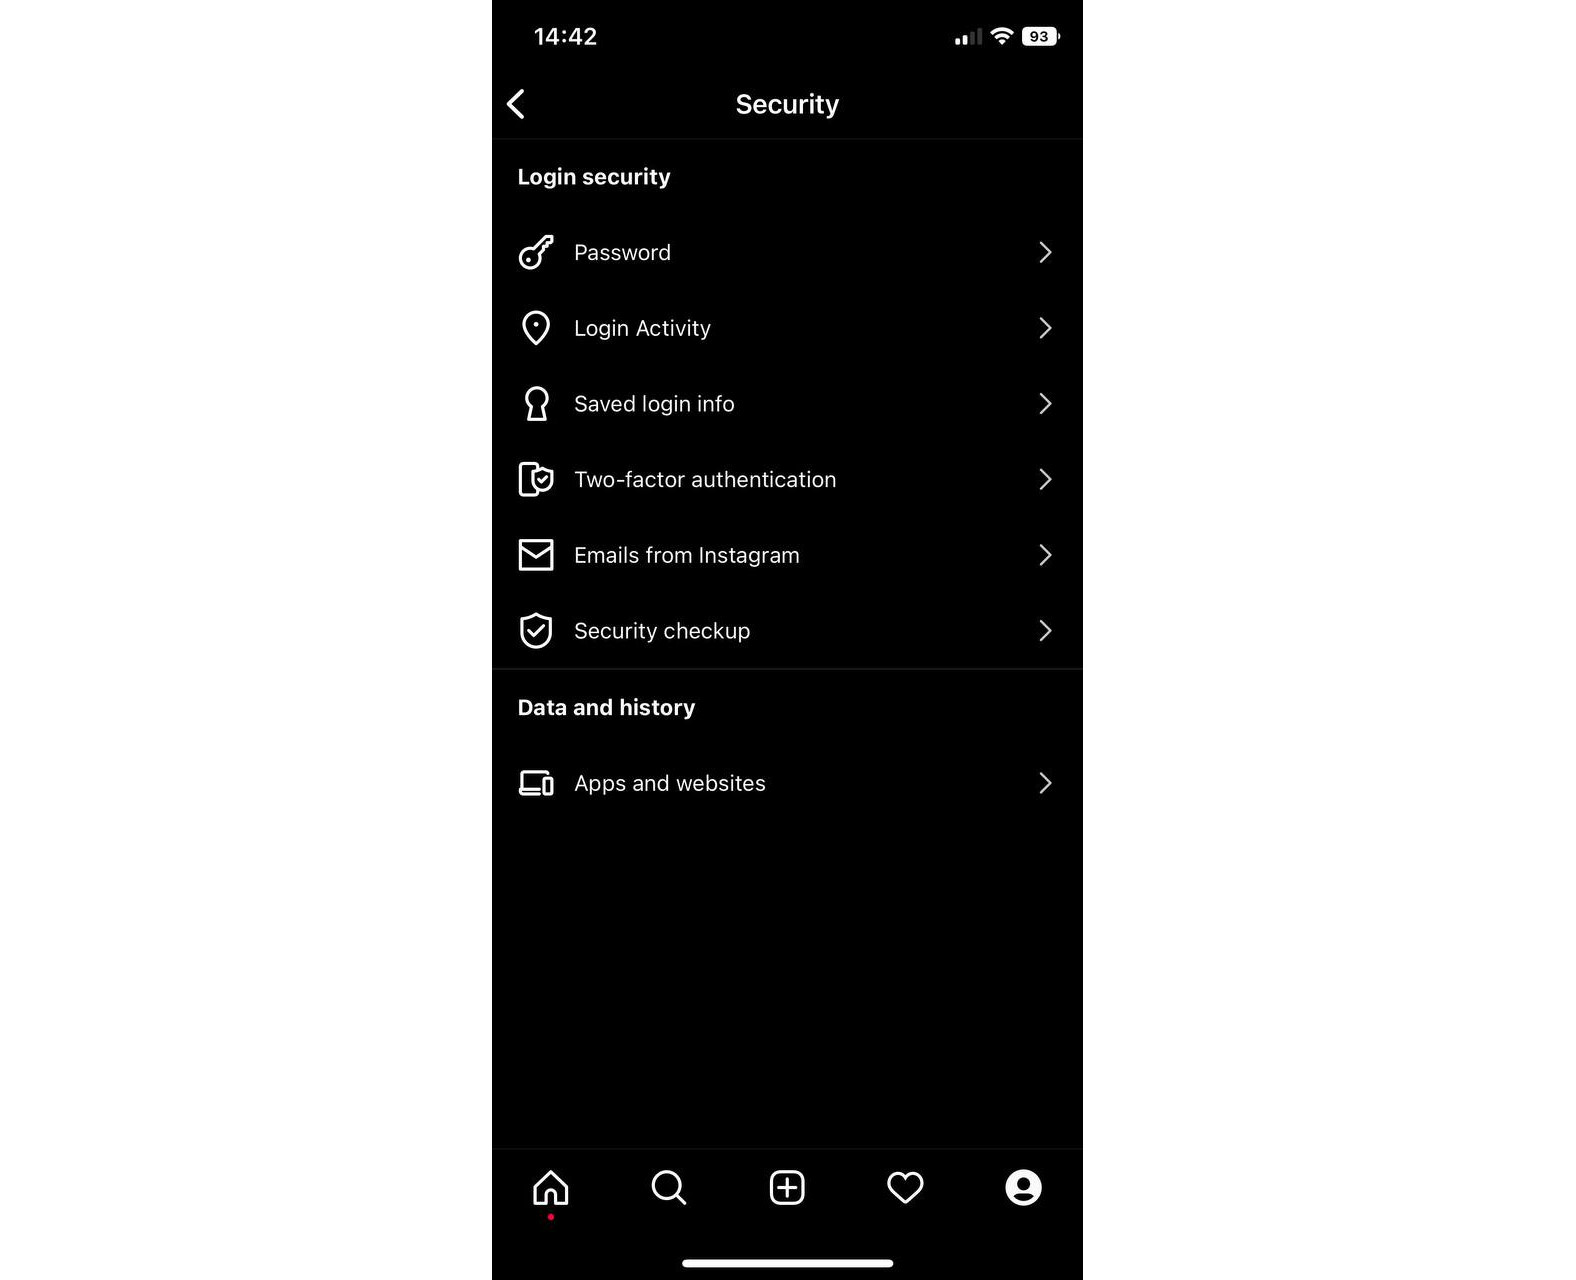 Instagram security settings menu on iPhone